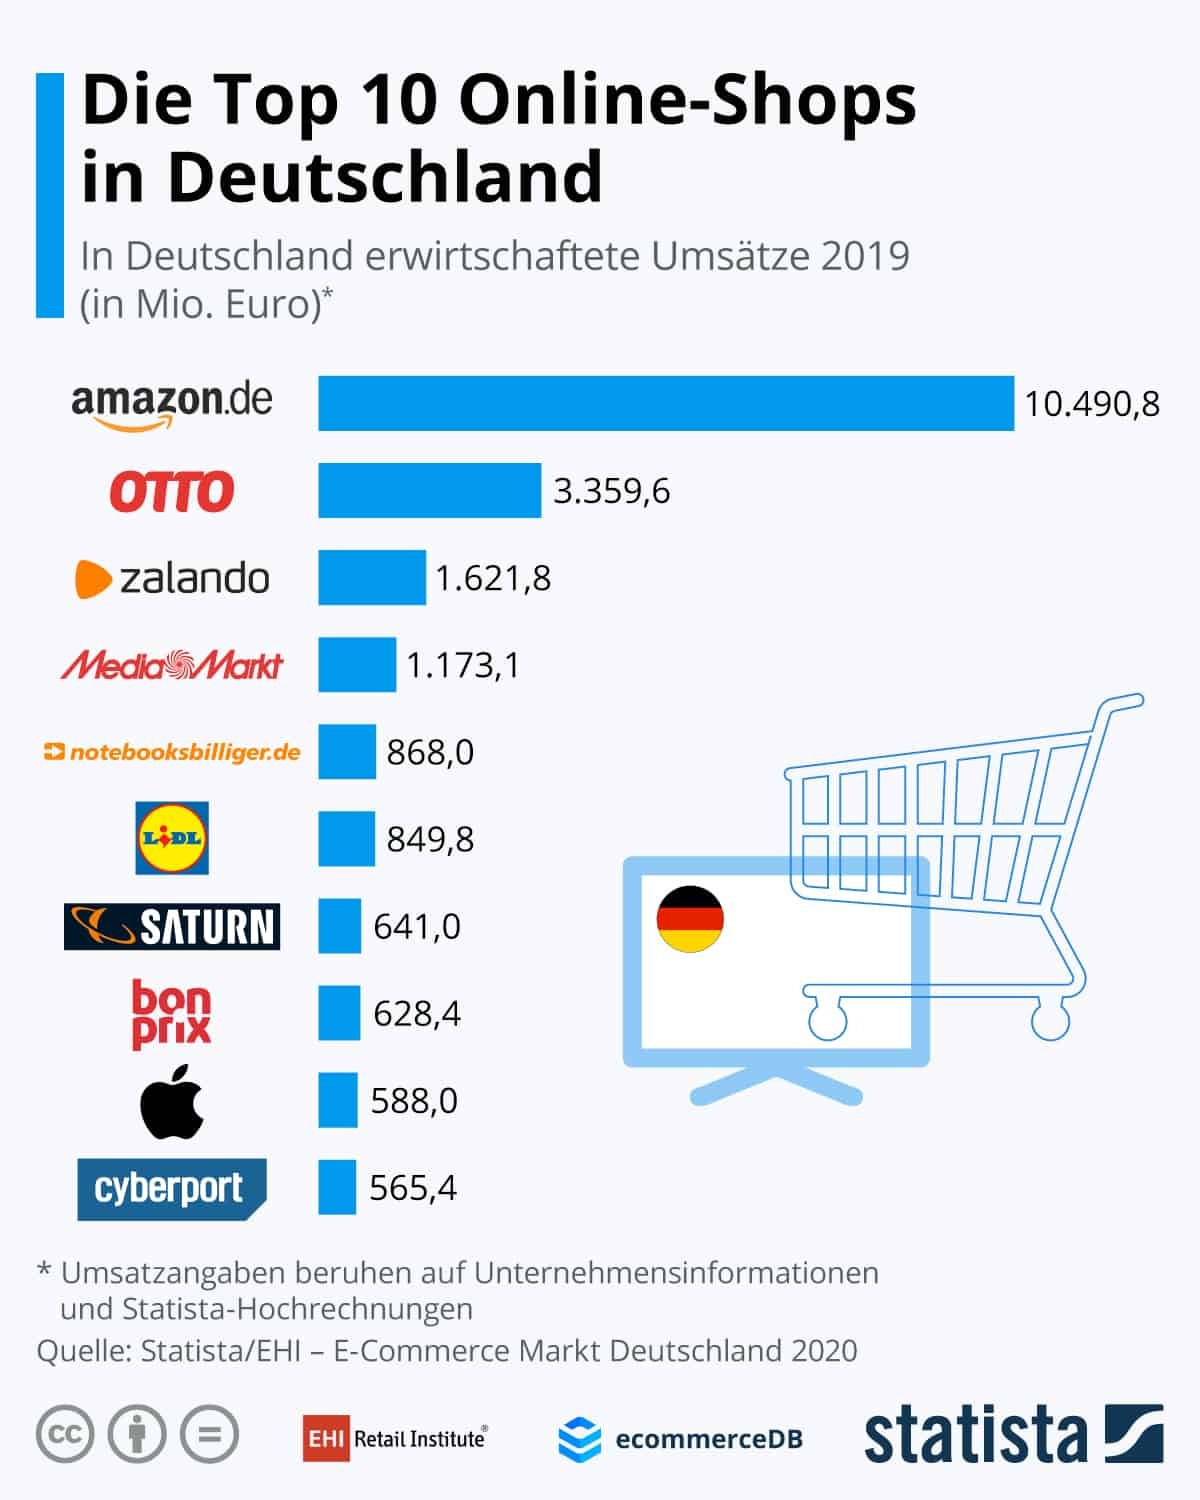 Top 10 Online-Shops in Deutschland (Umsatz in Mio. Euro).